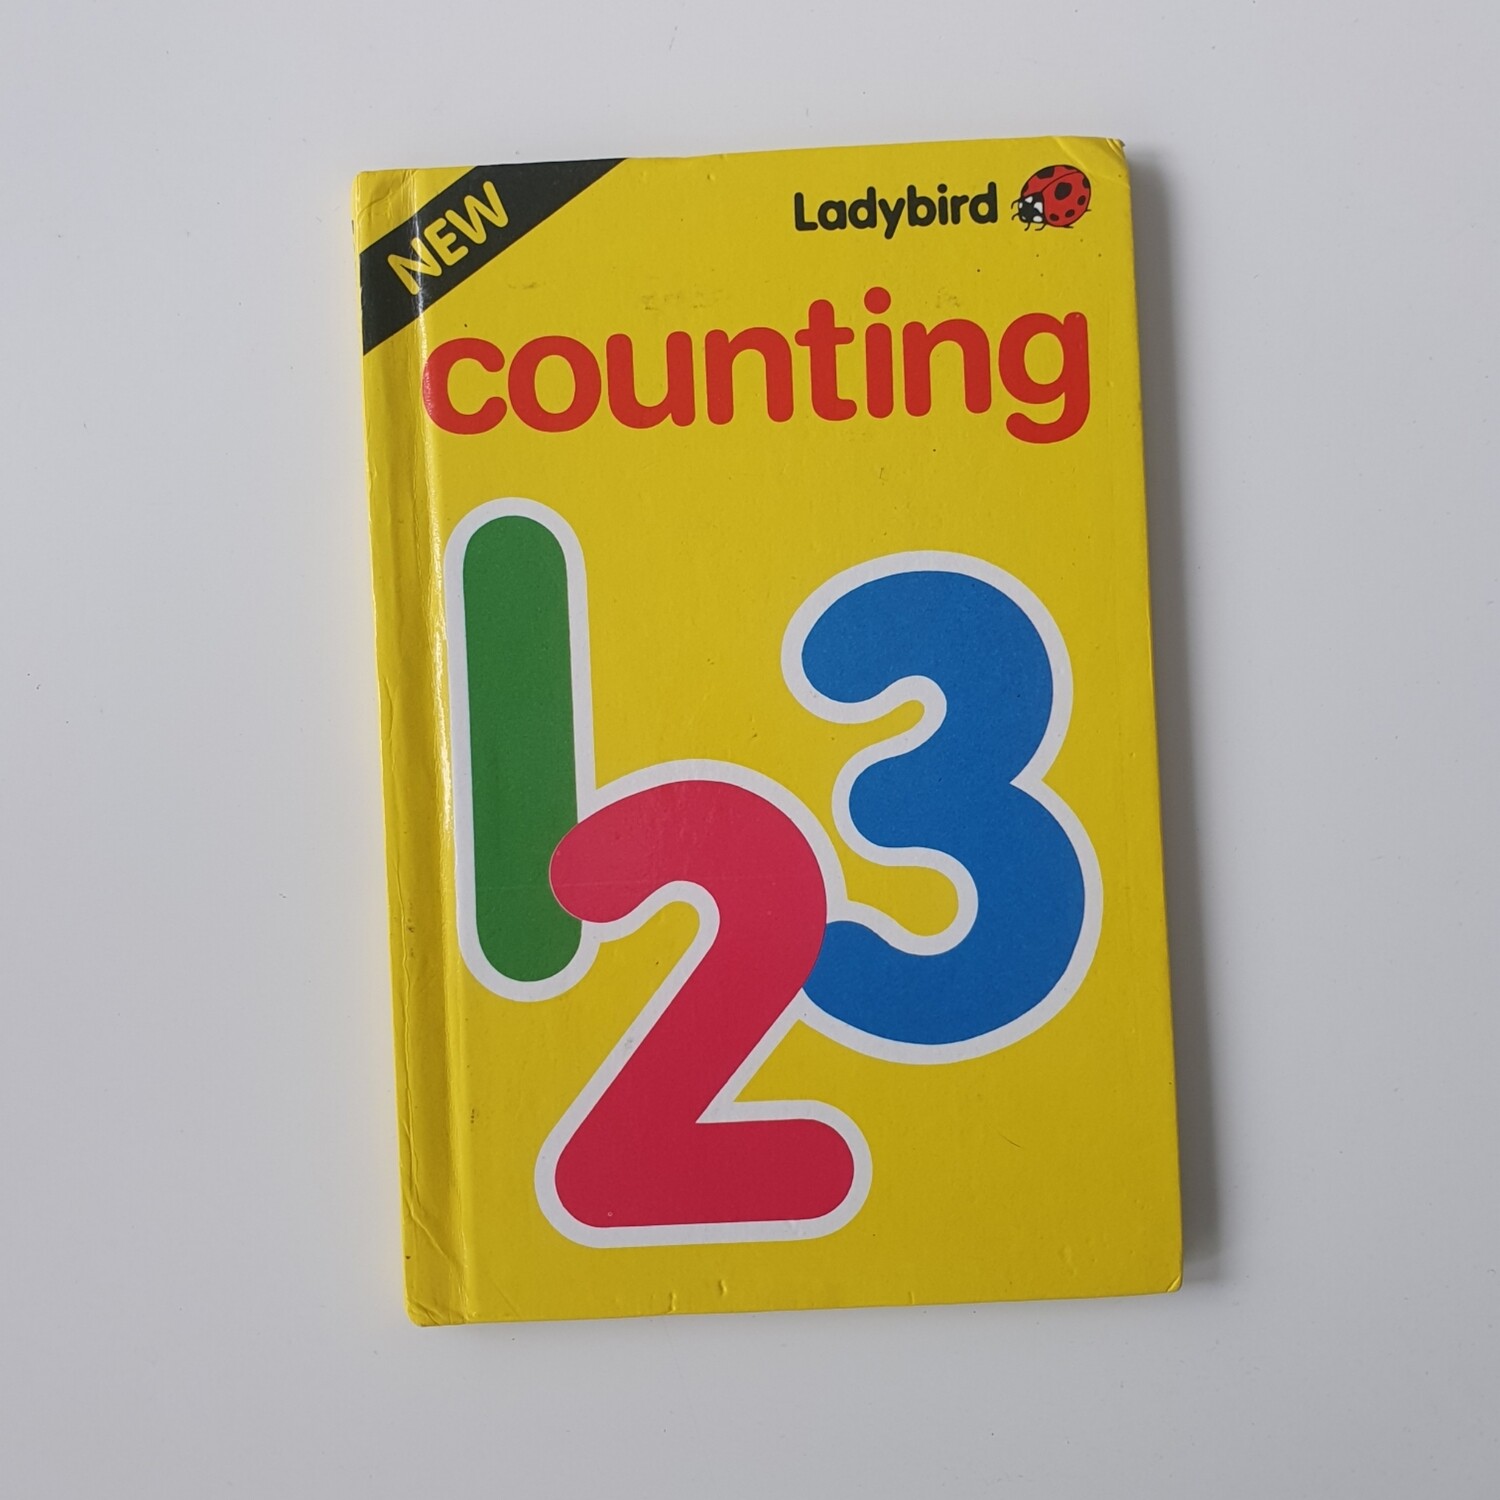 Counting - Ladybird Book, maths, teacher